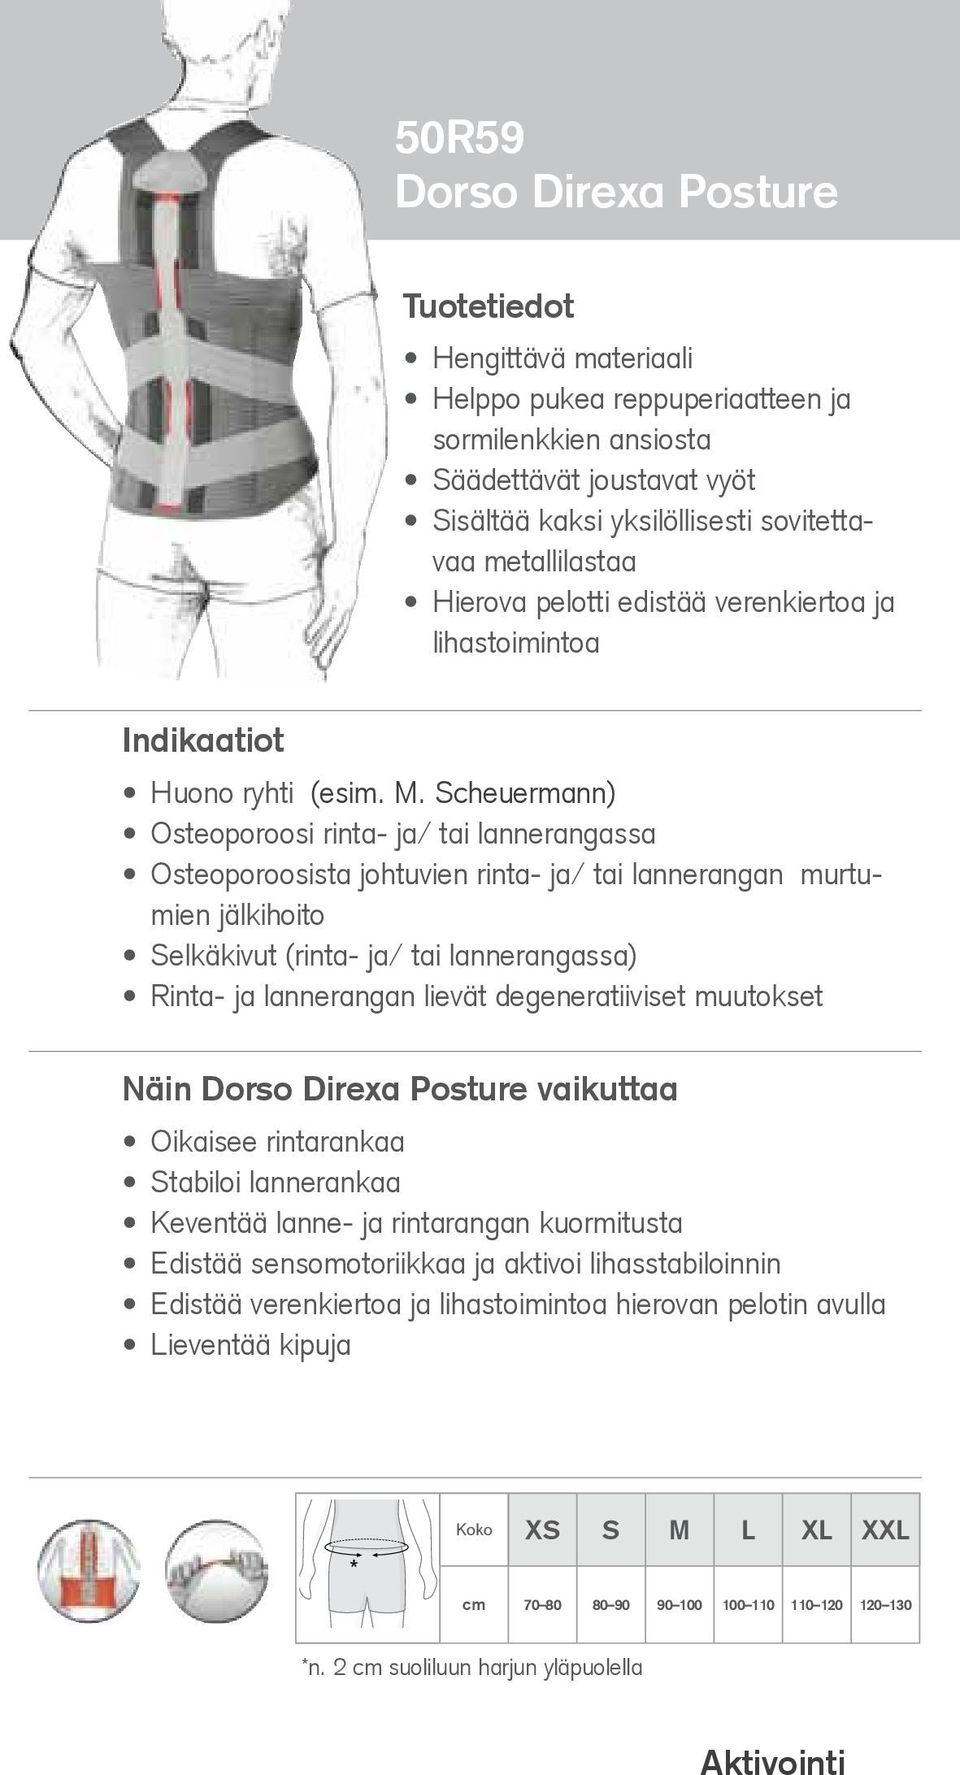 Scheuermann) Osteoporoosi rinta- ja/ tai lannerangassa Osteoporoosista johtuvien rinta- ja/ tai lannerangan murtumien jälkihoito Selkäkivut (rinta- ja/ tai lannerangassa) Rinta- ja lannerangan lievät